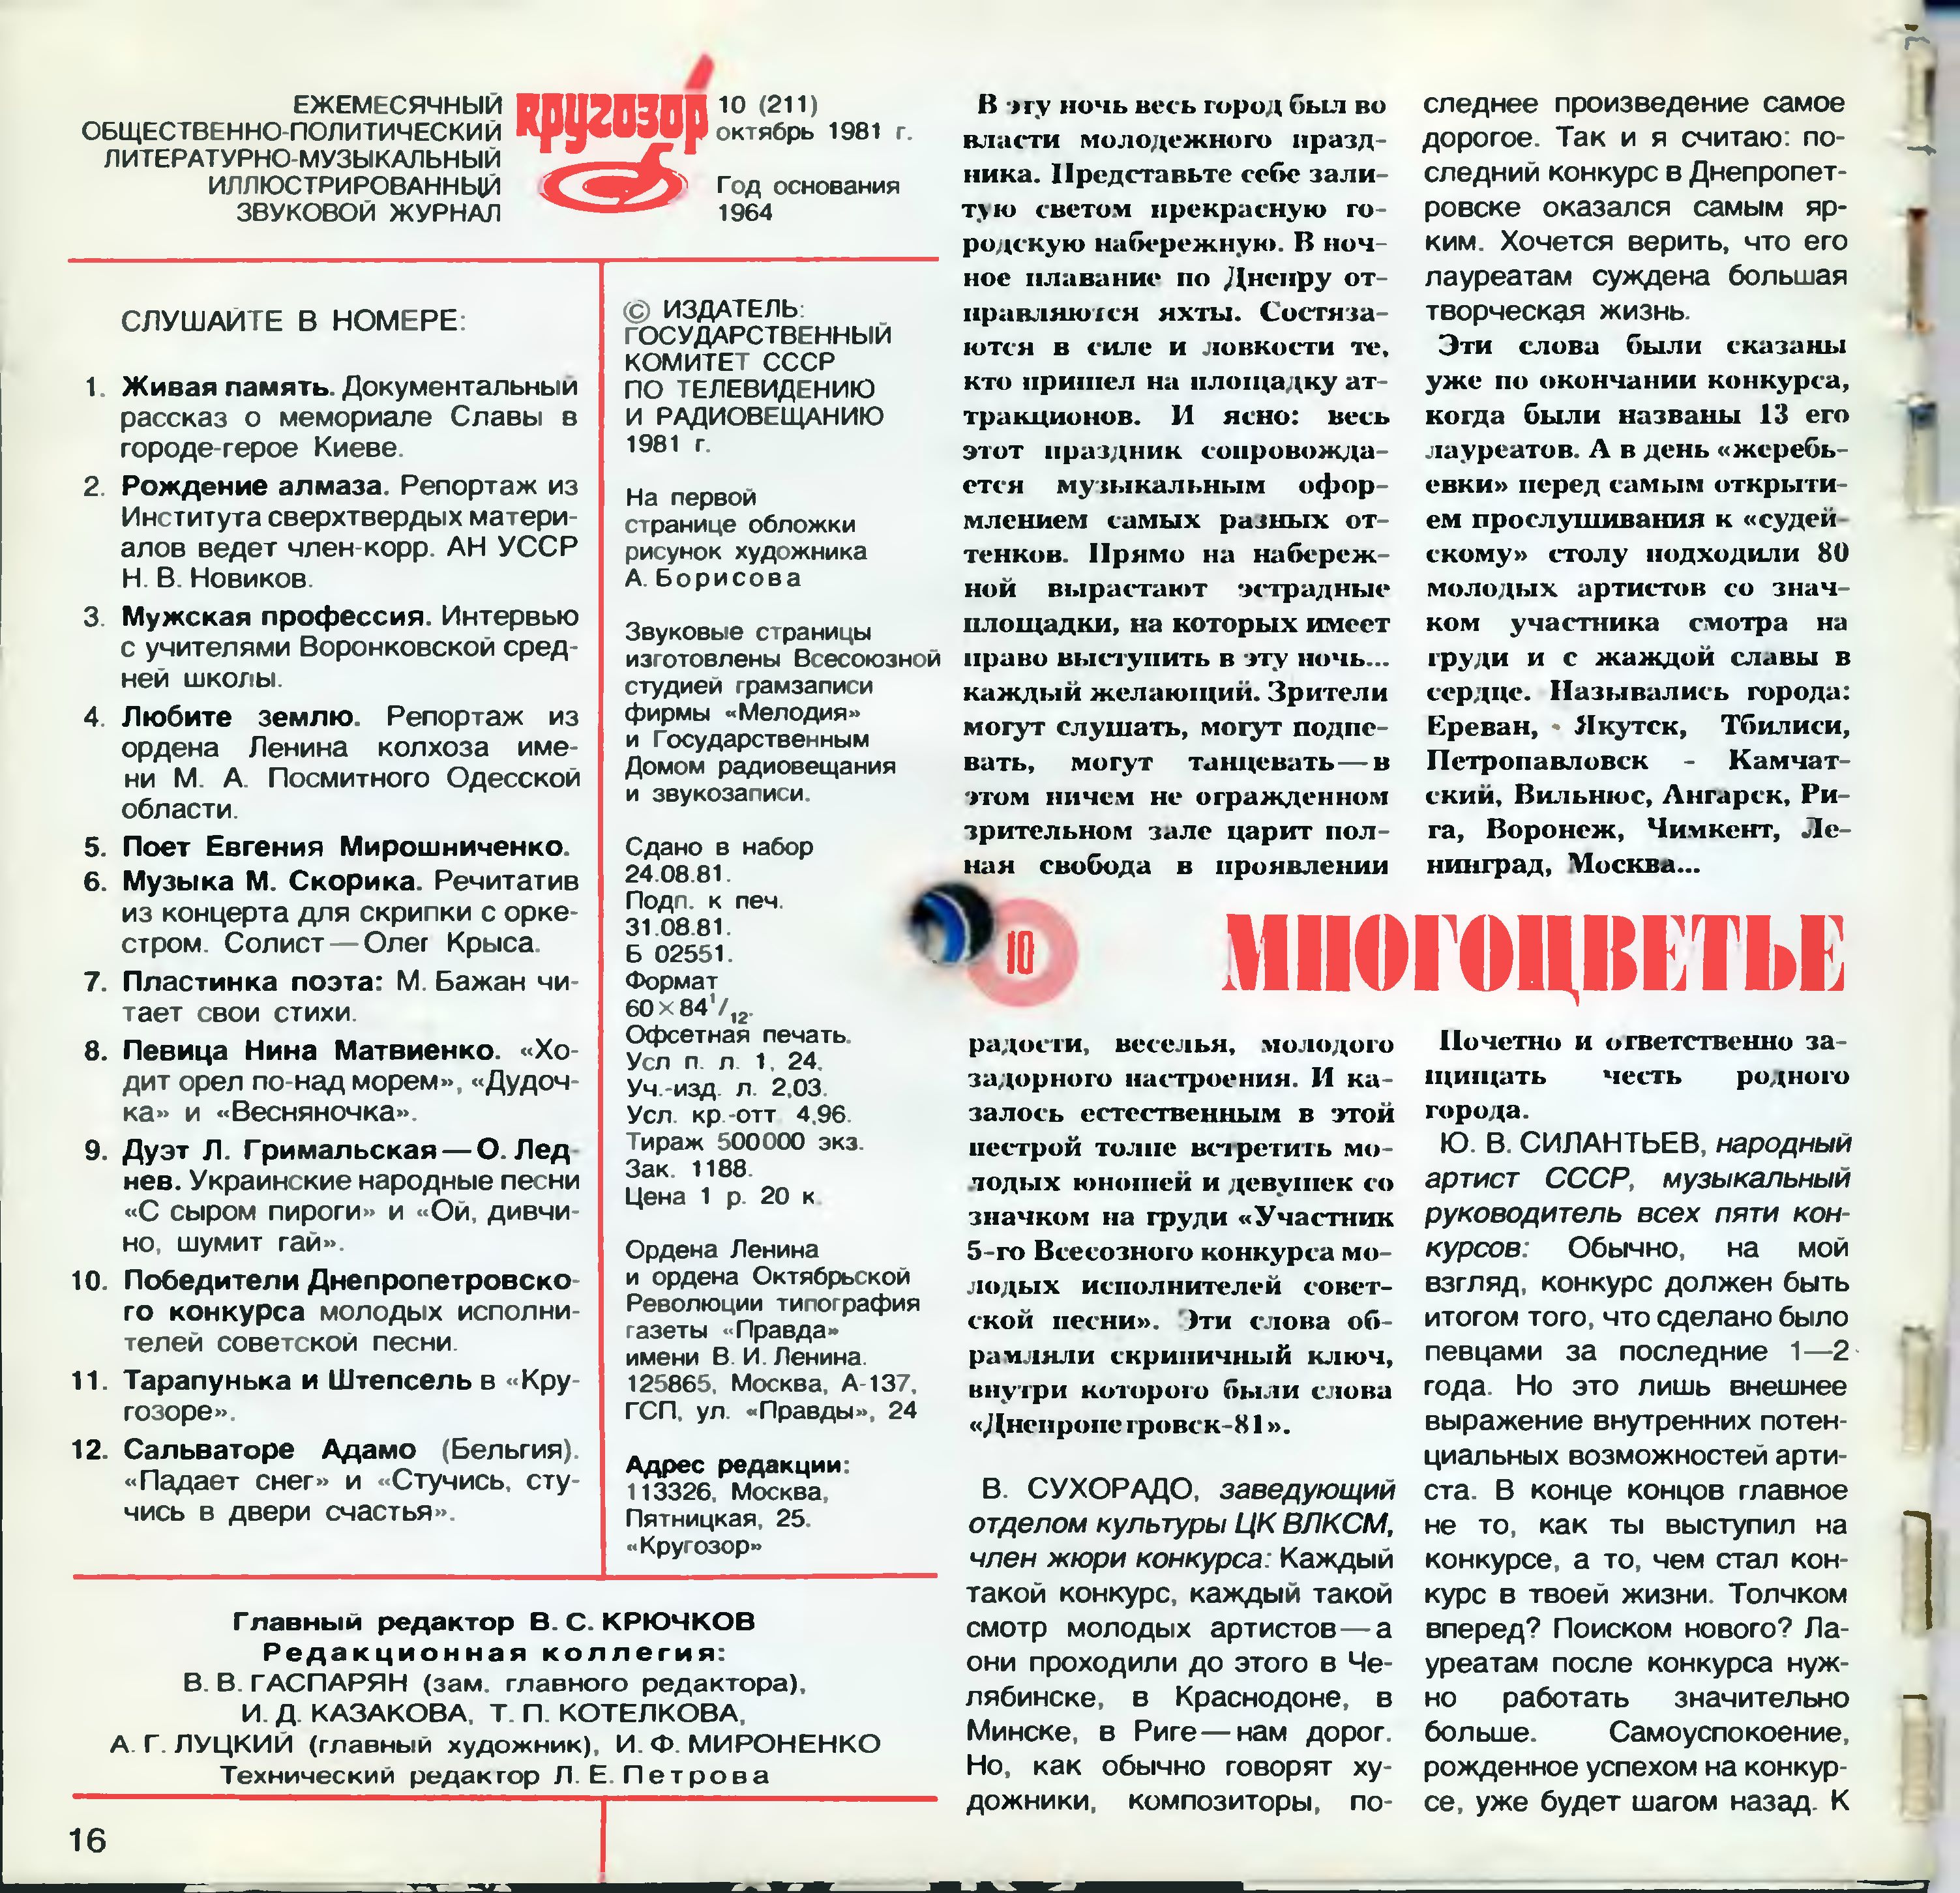 Кругозор 1981 №10